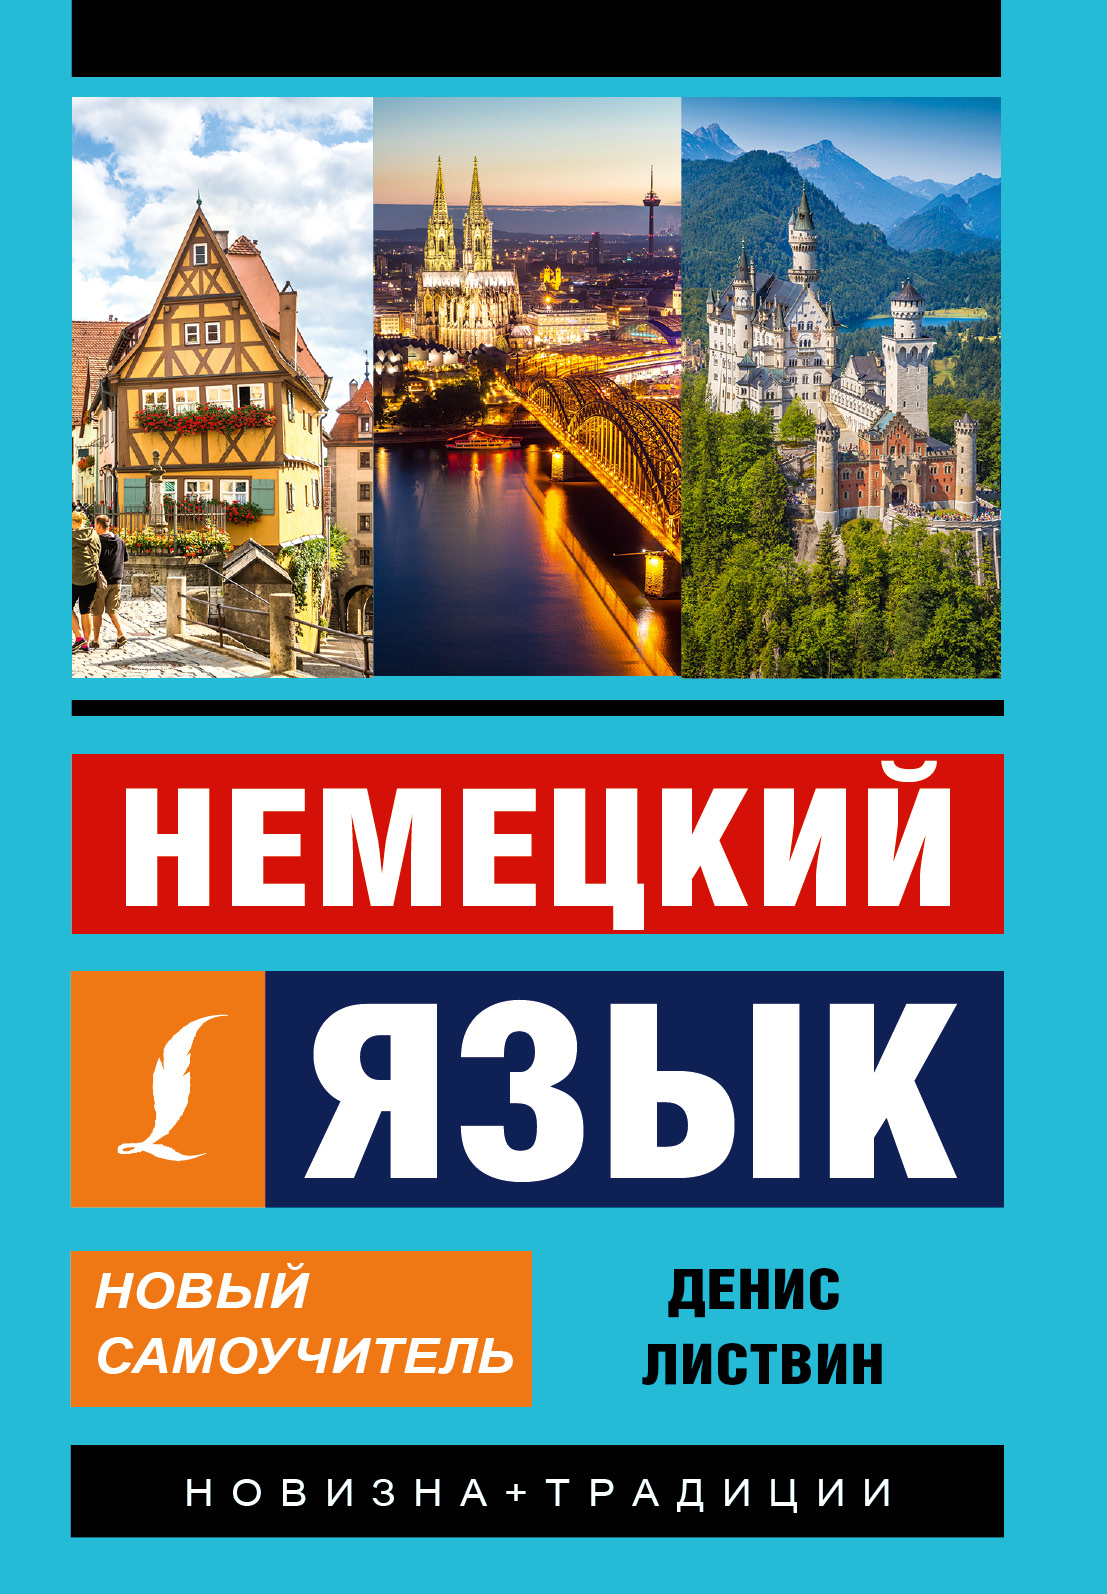 https://cdn.eksmo.ru/v2/ASE000000000724315/COVER/cover3d1.jpg